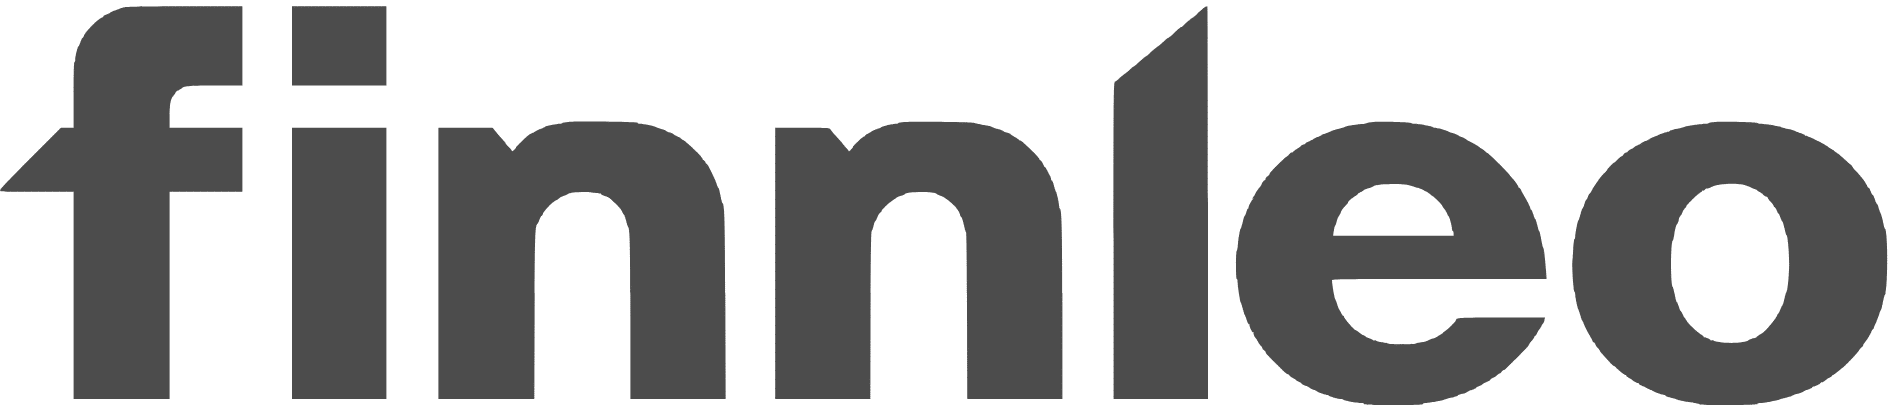 Finnleo logo